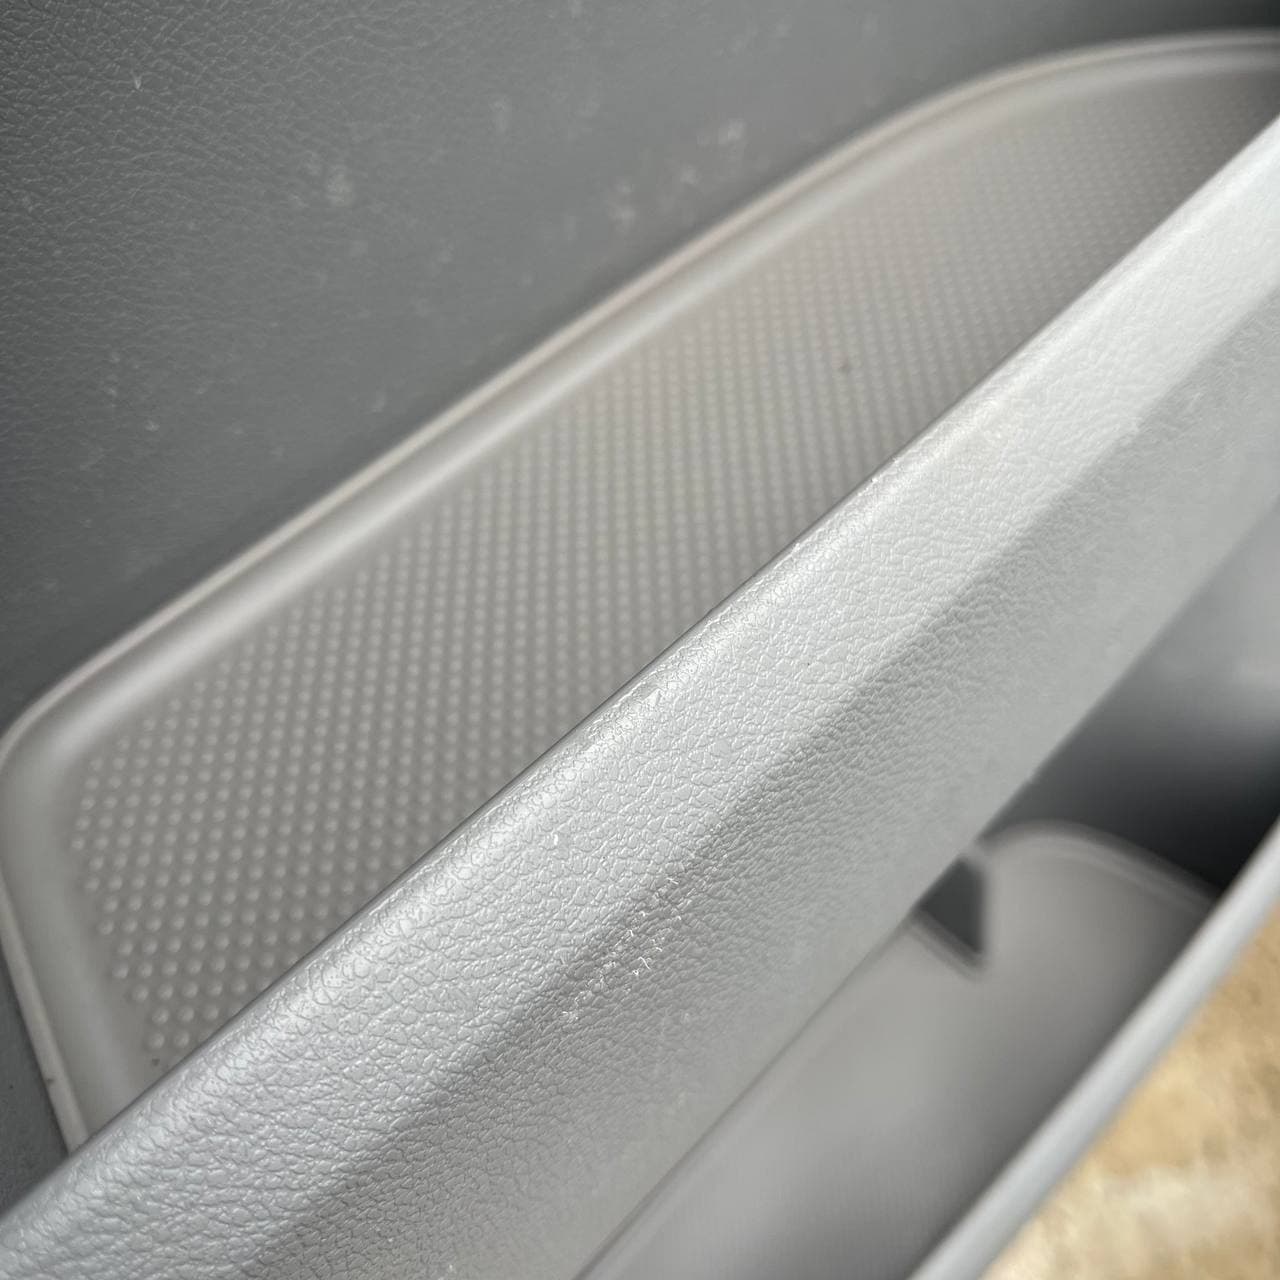 VW T5, T5.1 van campervan Door Pocket Inserts, Rubber, Door Liner ( Light Grey) Both Captain Seats Interior Styling ideal gift